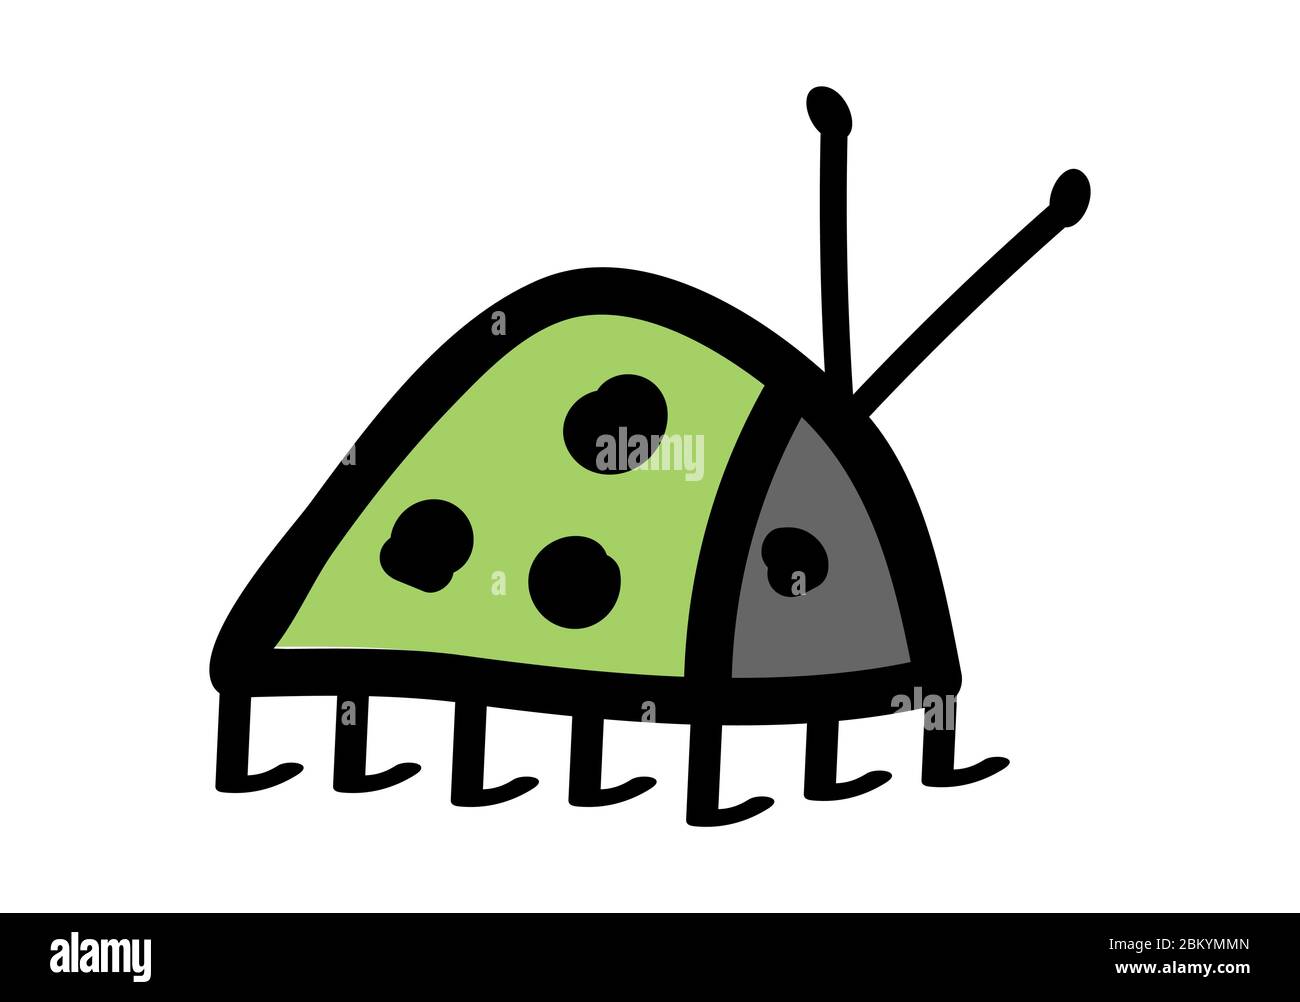 Kleine Käfer Baby hellgrün mit drei schwarzen Punkten, grauer Schnauze und Antennen auf weißem Hintergrund. Flacher Stil. Nachahmung der Kinderzeichnung Stock Vektor